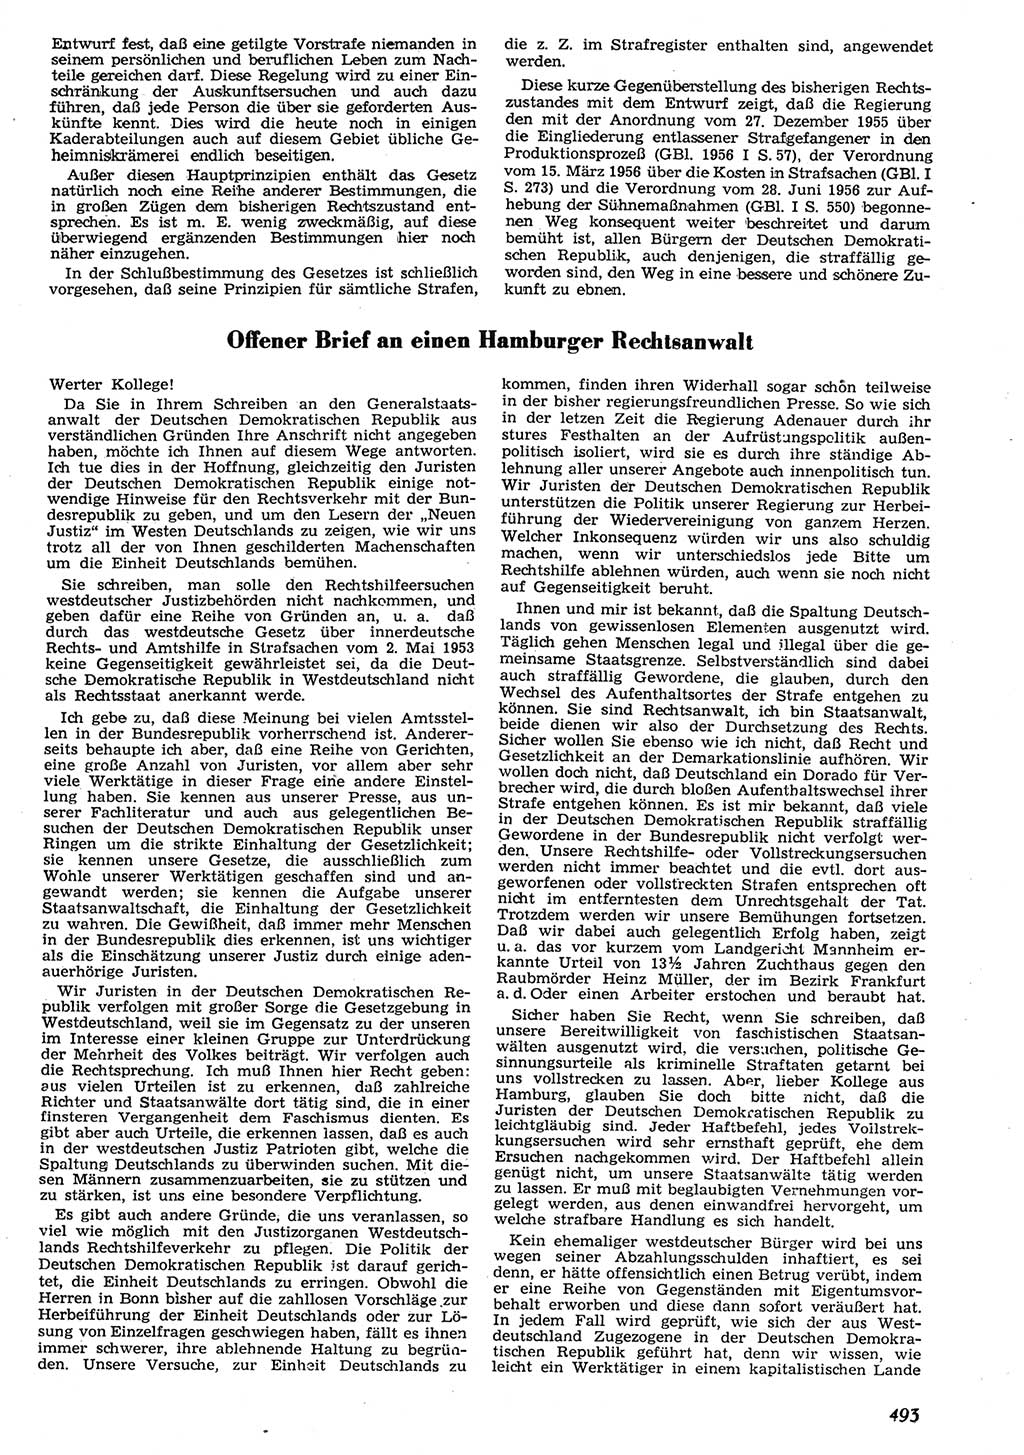 Neue Justiz (NJ), Zeitschrift für Recht und Rechtswissenschaft [Deutsche Demokratische Republik (DDR)], 10. Jahrgang 1956, Seite 493 (NJ DDR 1956, S. 493)